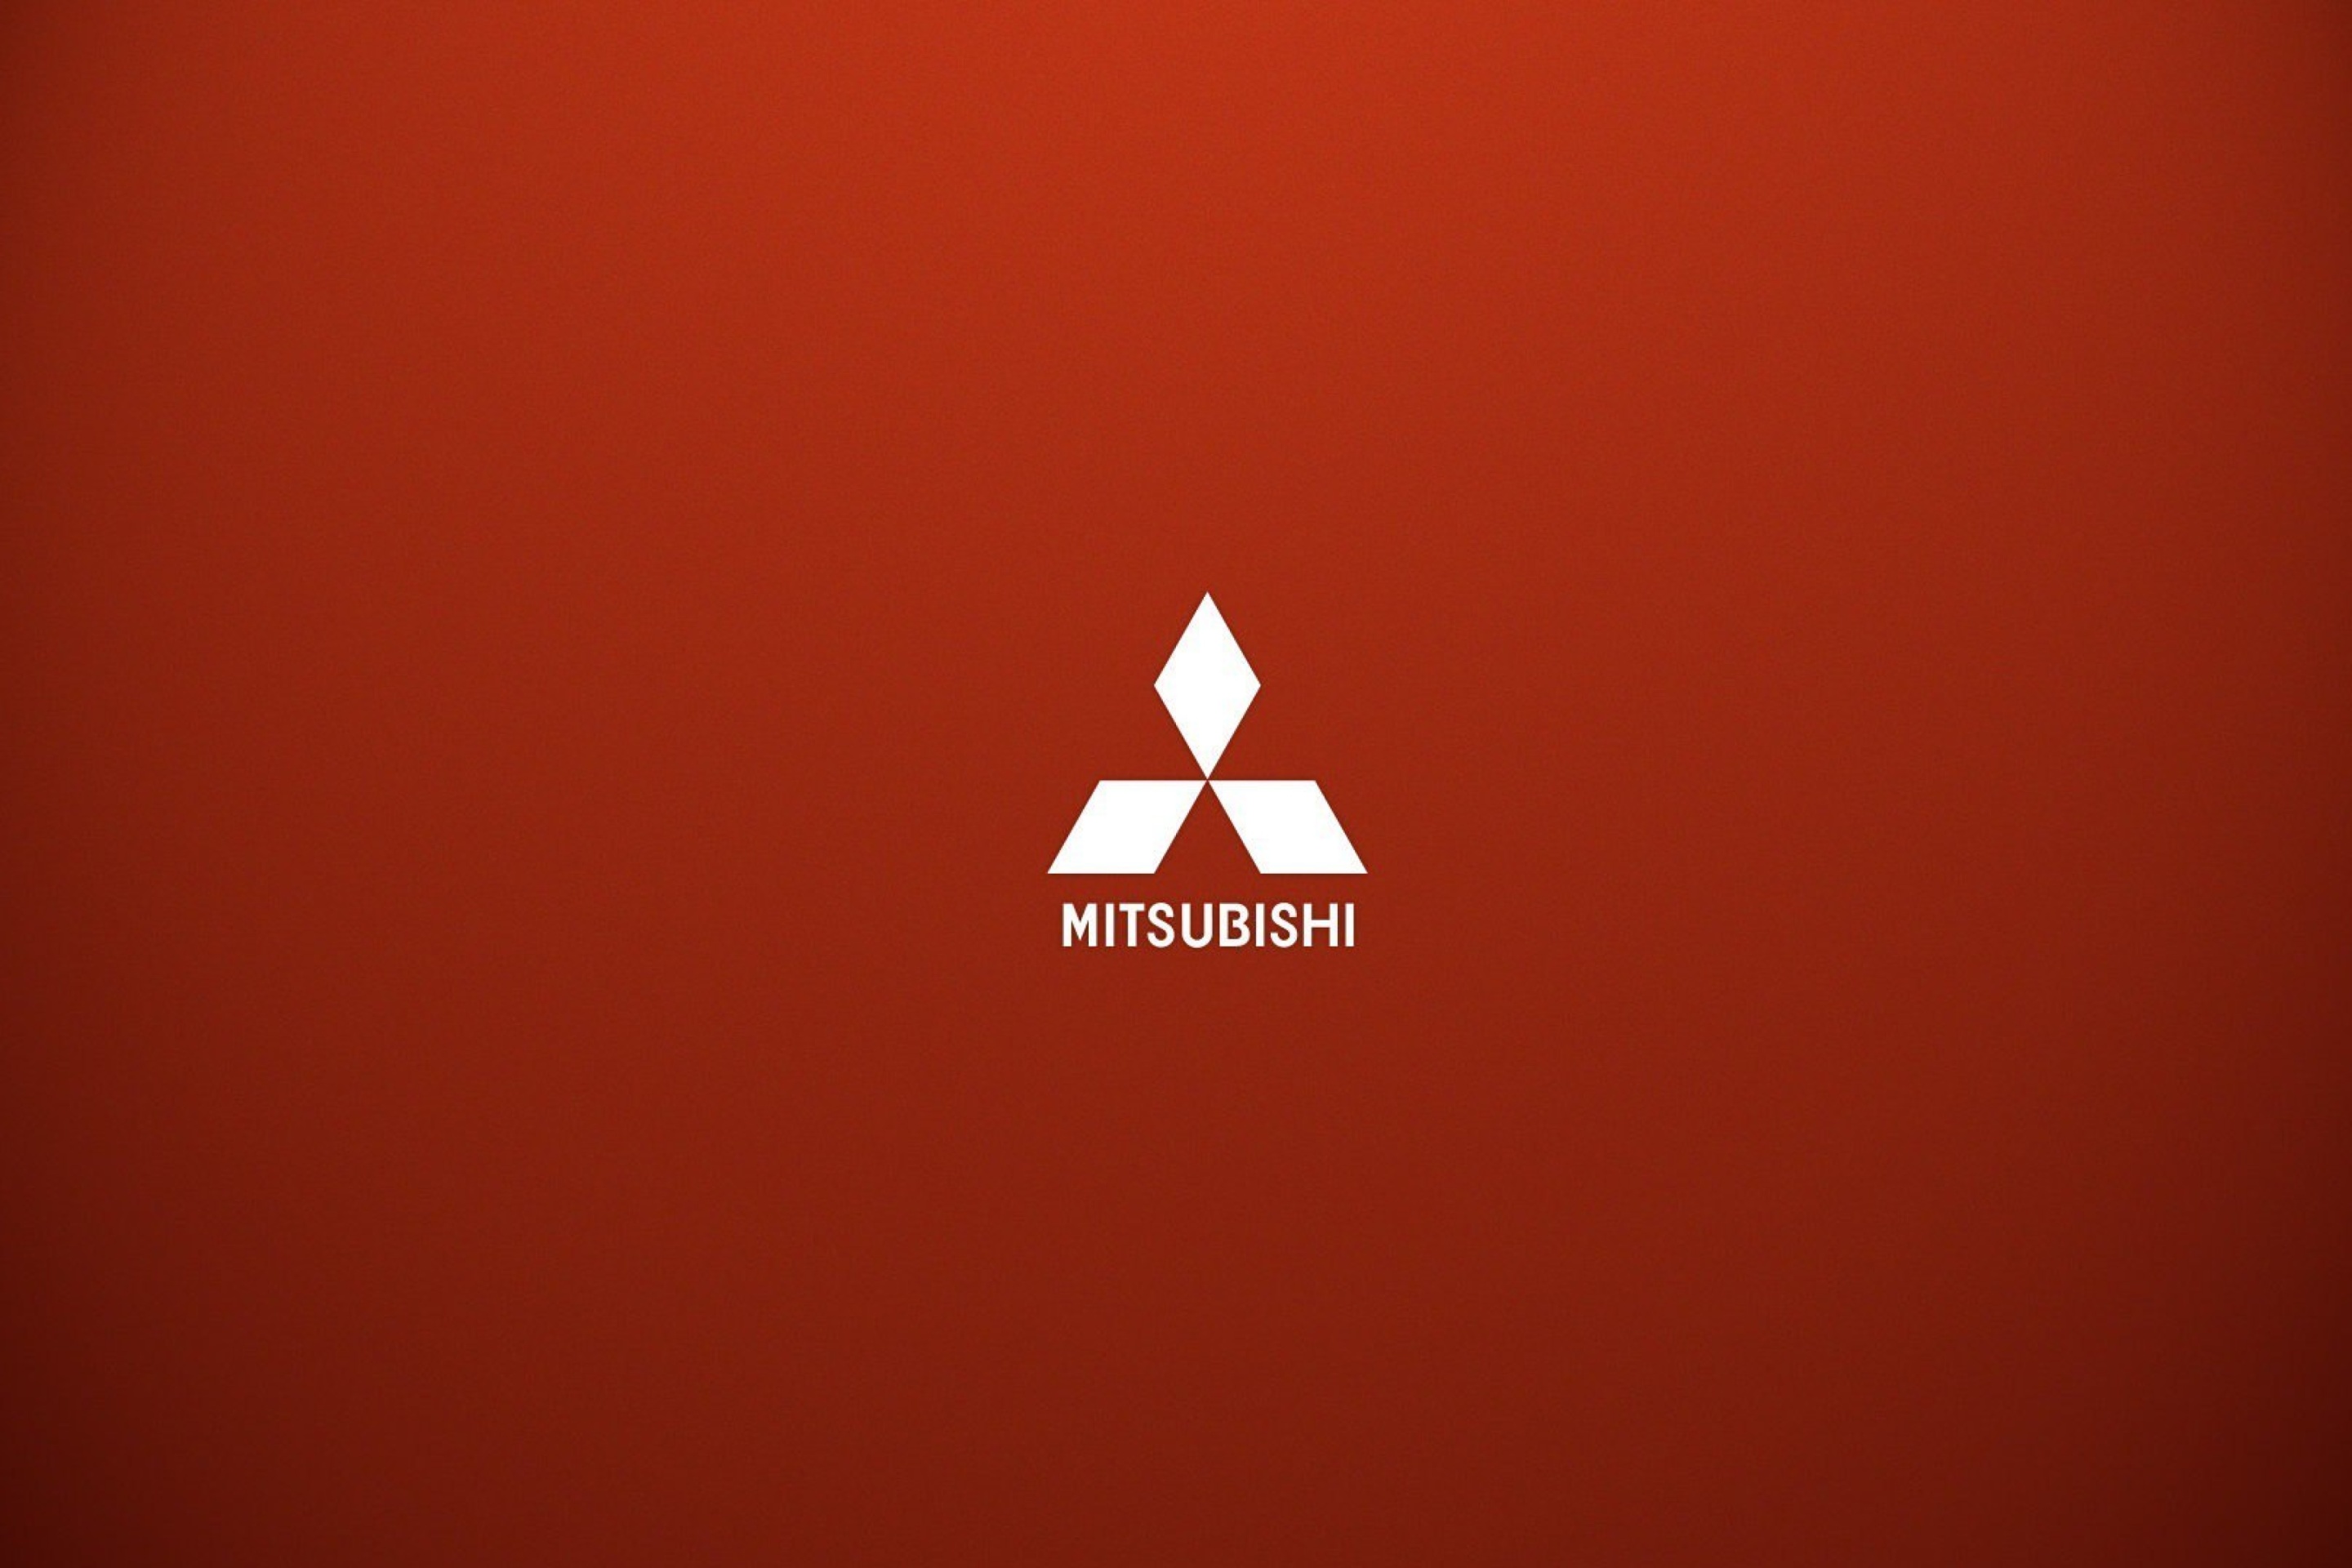 Das Mitsubishi logo Wallpaper 2880x1920